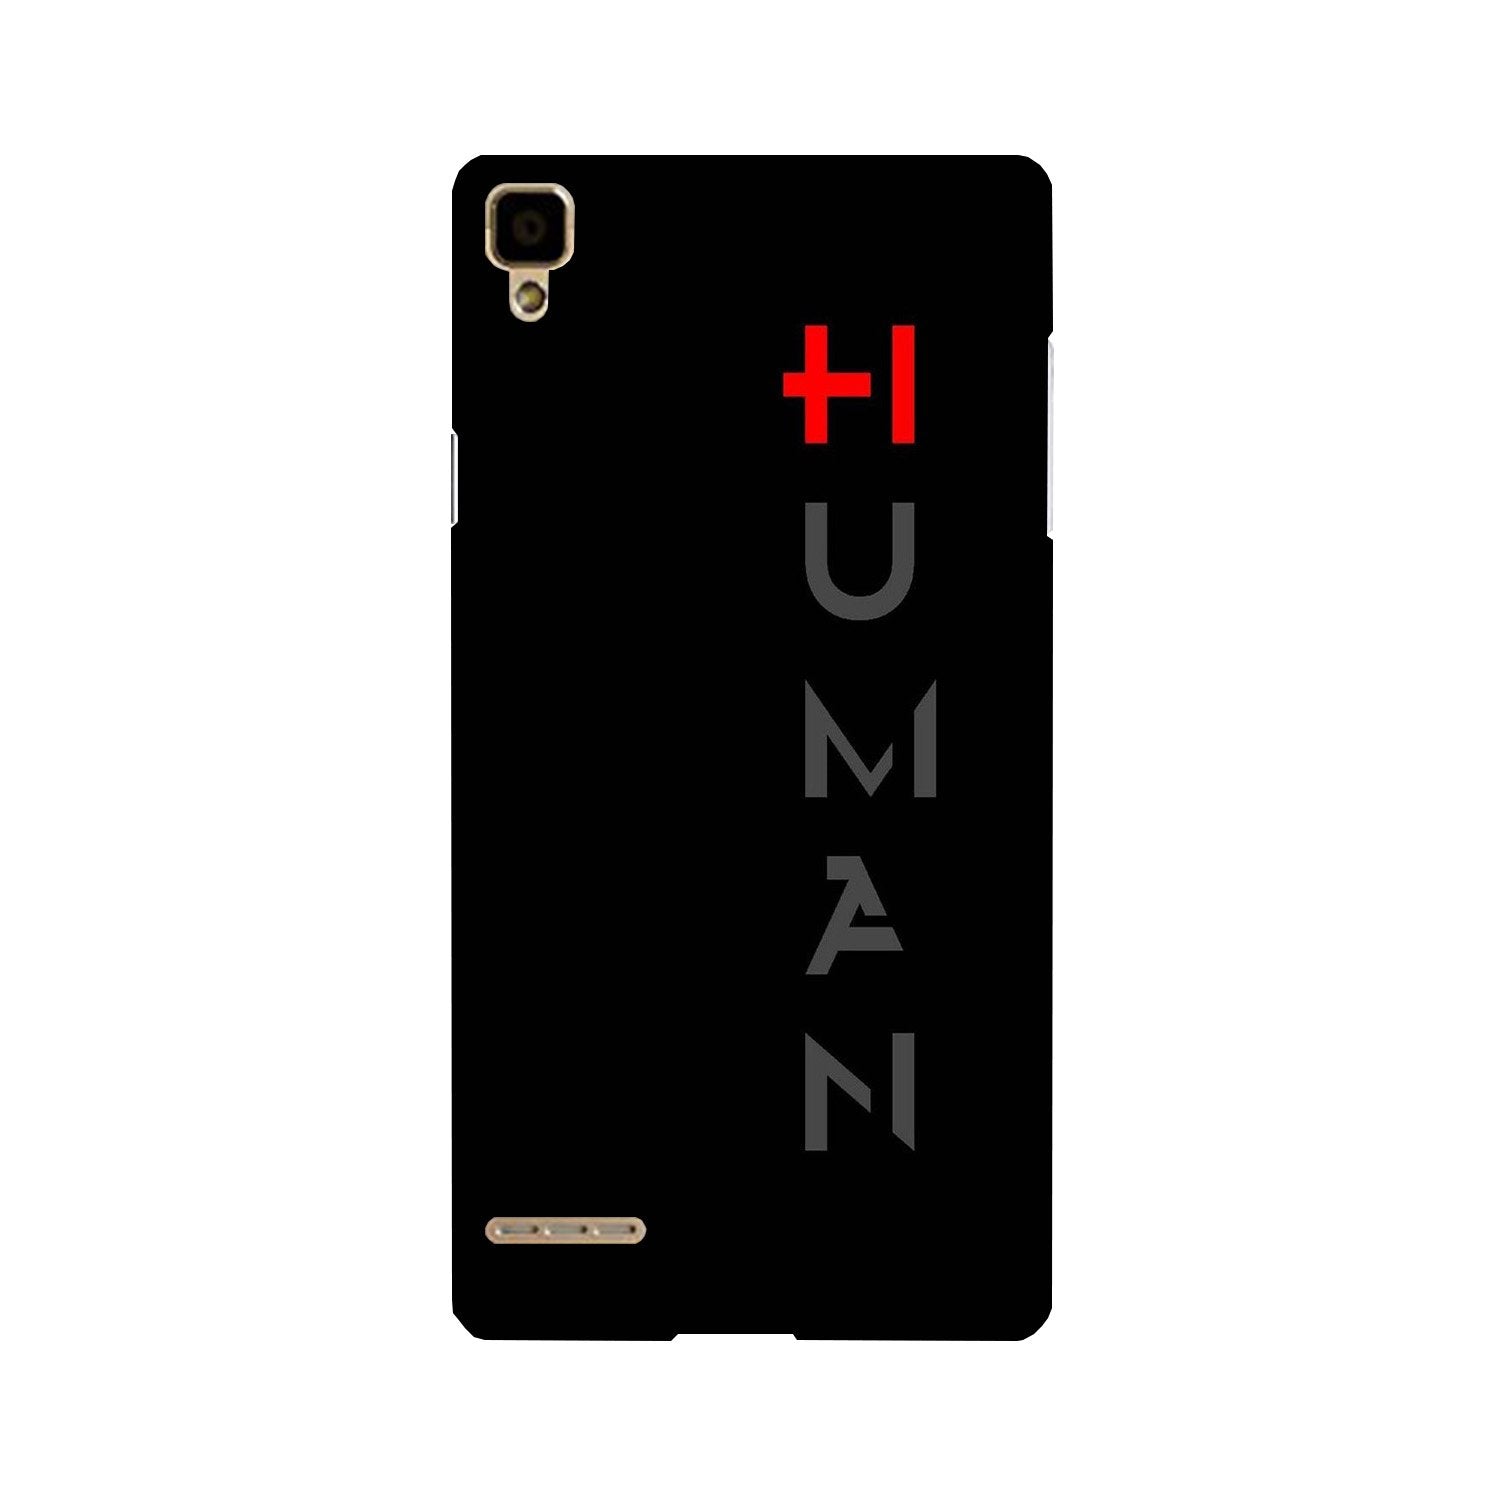 Human Case for Oppo F1(Design - 141)